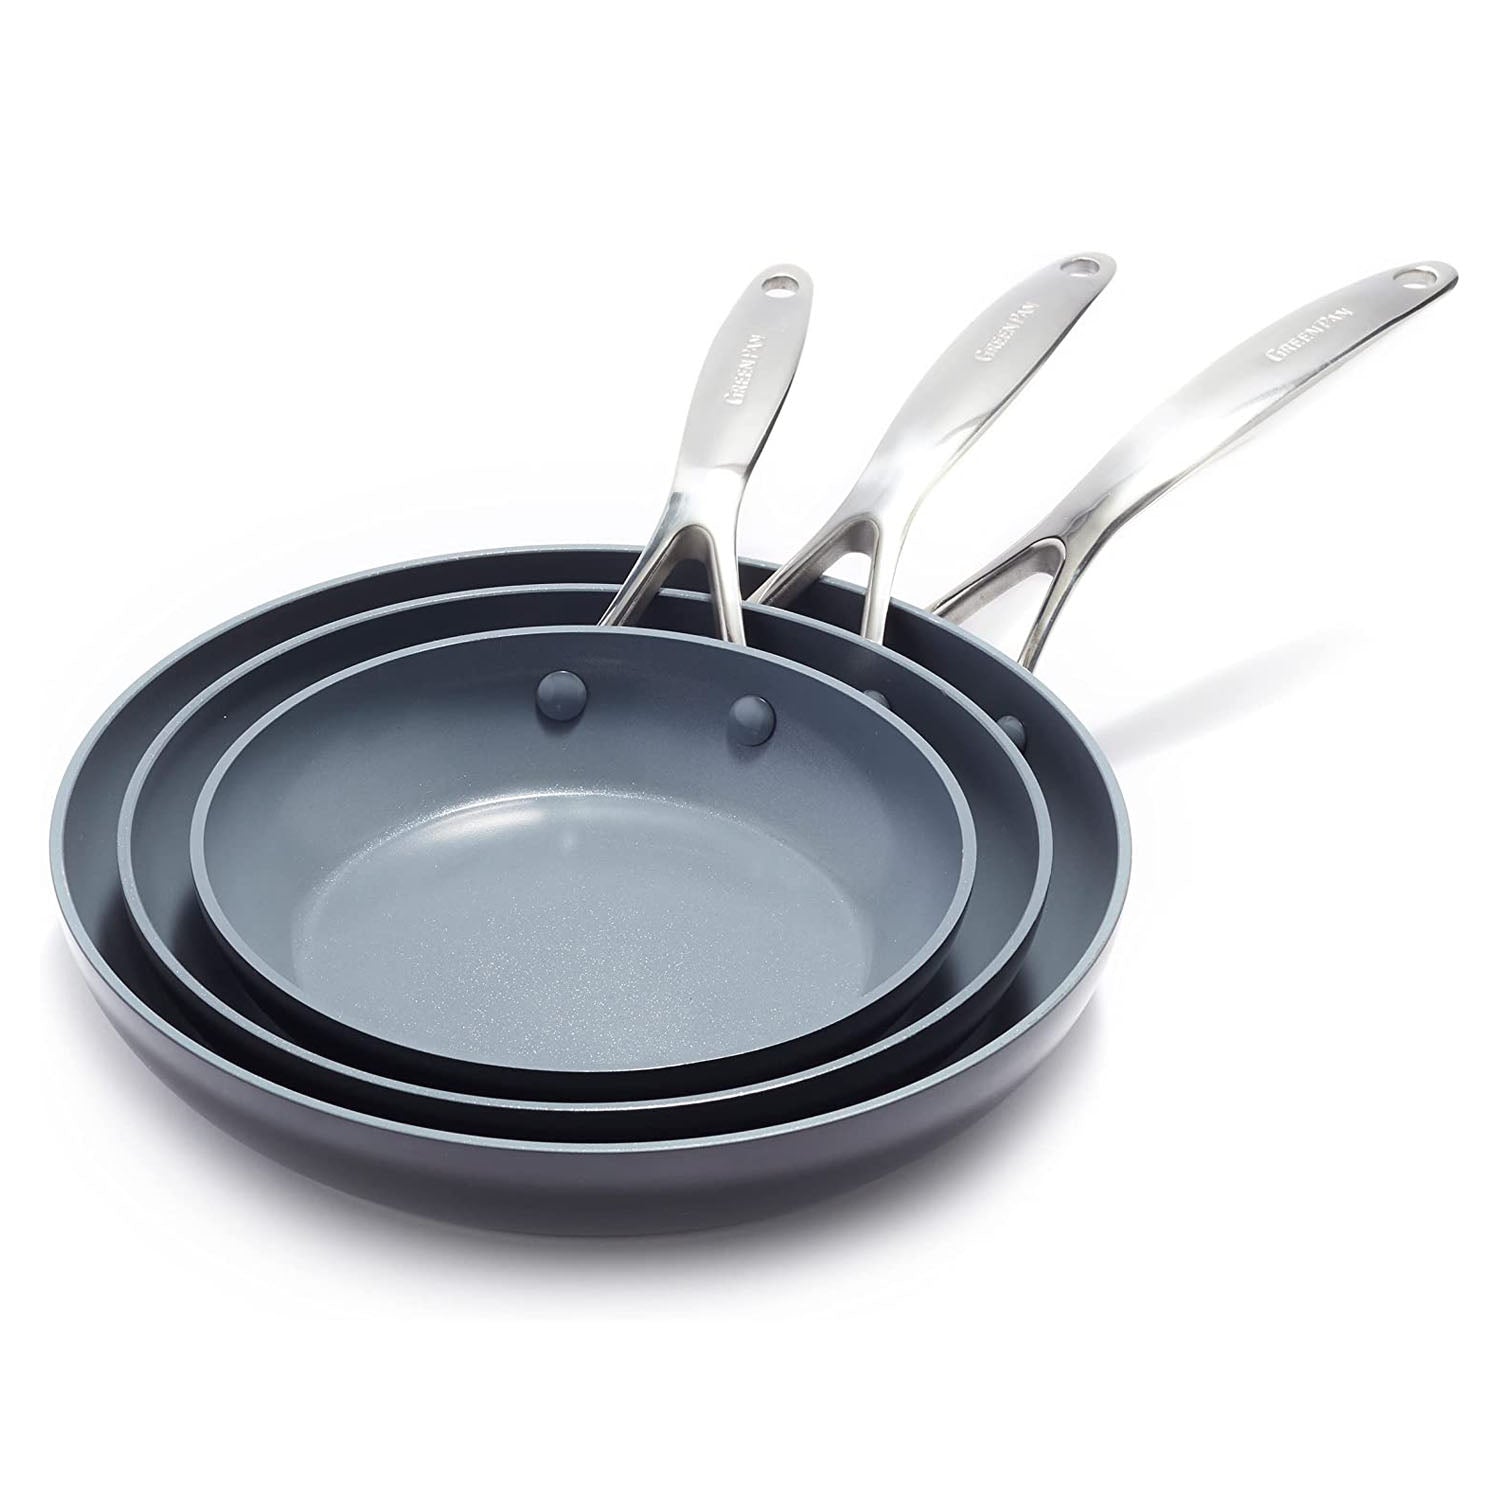 Green Pan Valencia Pro Ceramic Non-Stick 11-Piece Cookware Set + Reviews